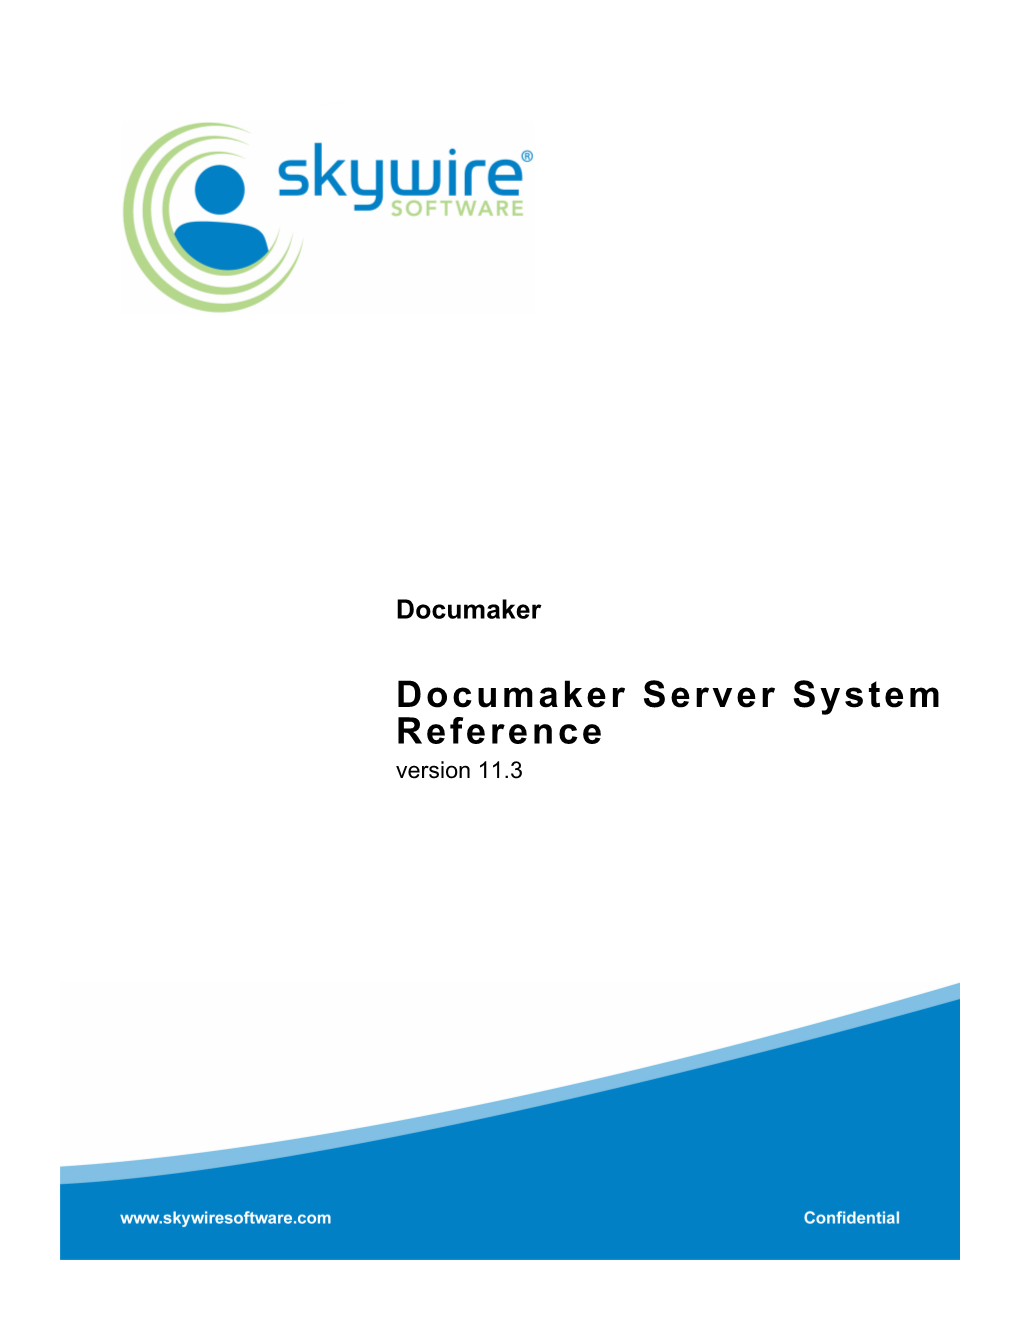 Documaker Server System Reference, Version 11.3